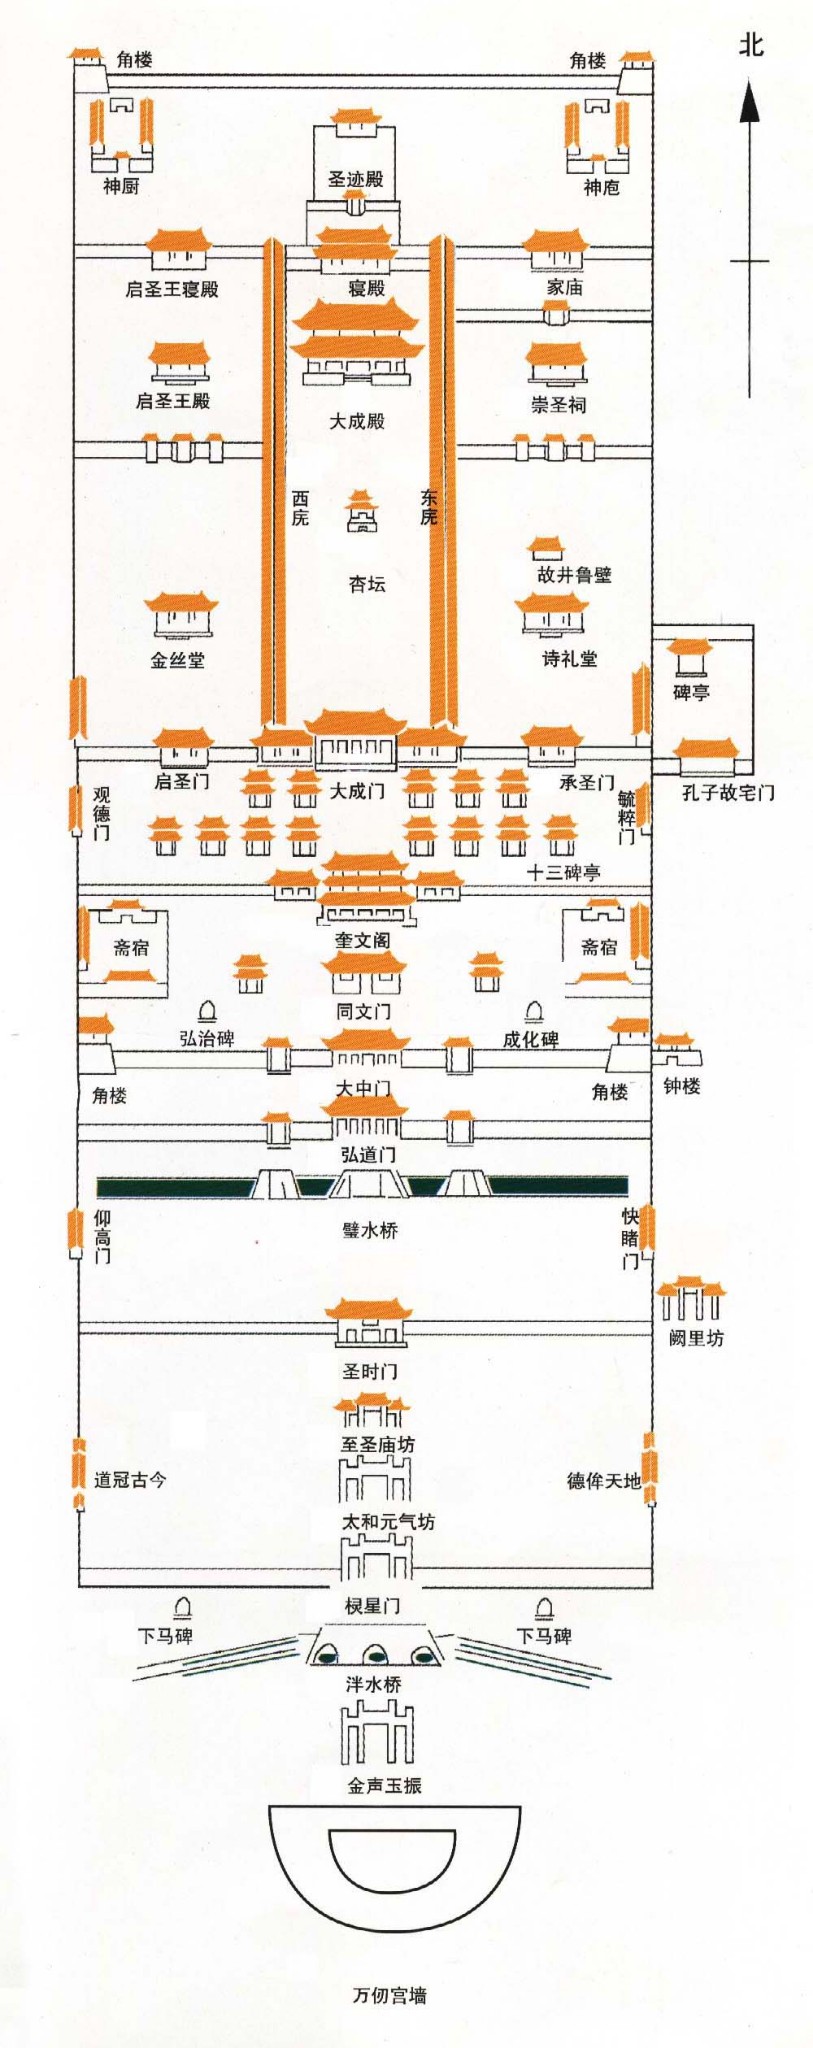 孔庙的主体建筑群规模宏大,从前至后,九进院落,分成前后两个